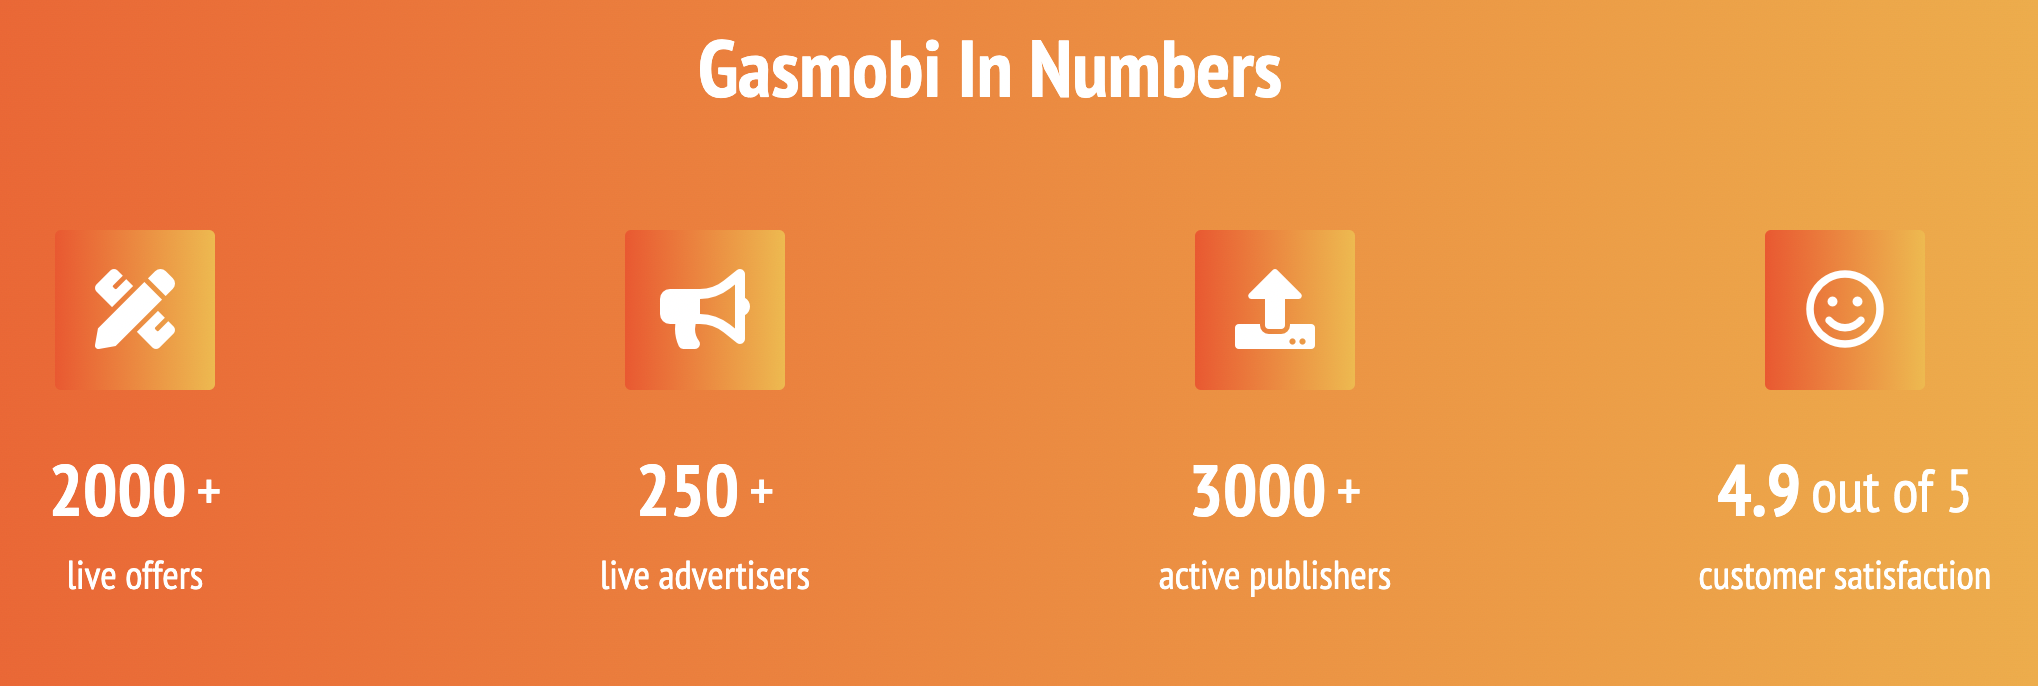 Agenții de publicitate și editori Gasmobi